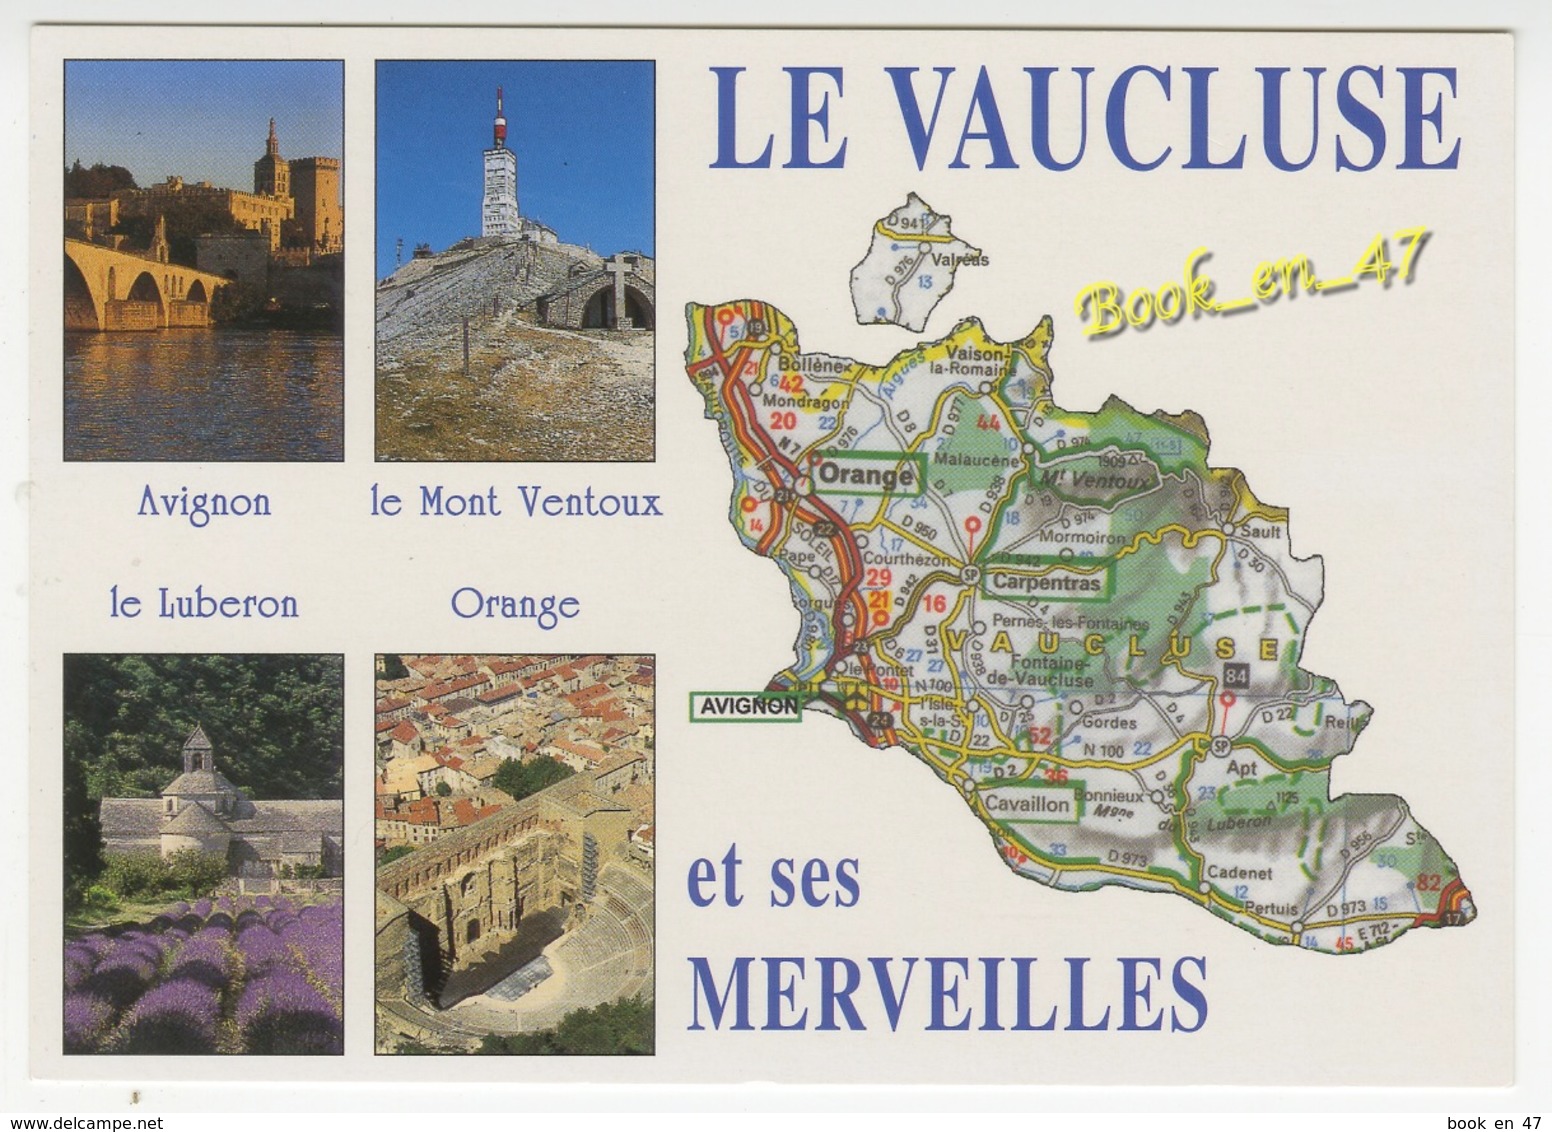 {79253} 84 Vaucluse , Carte Et Multivues ; Avignon , Le Mont Ventoux , Orange , Le Luberon - Cartes Géographiques